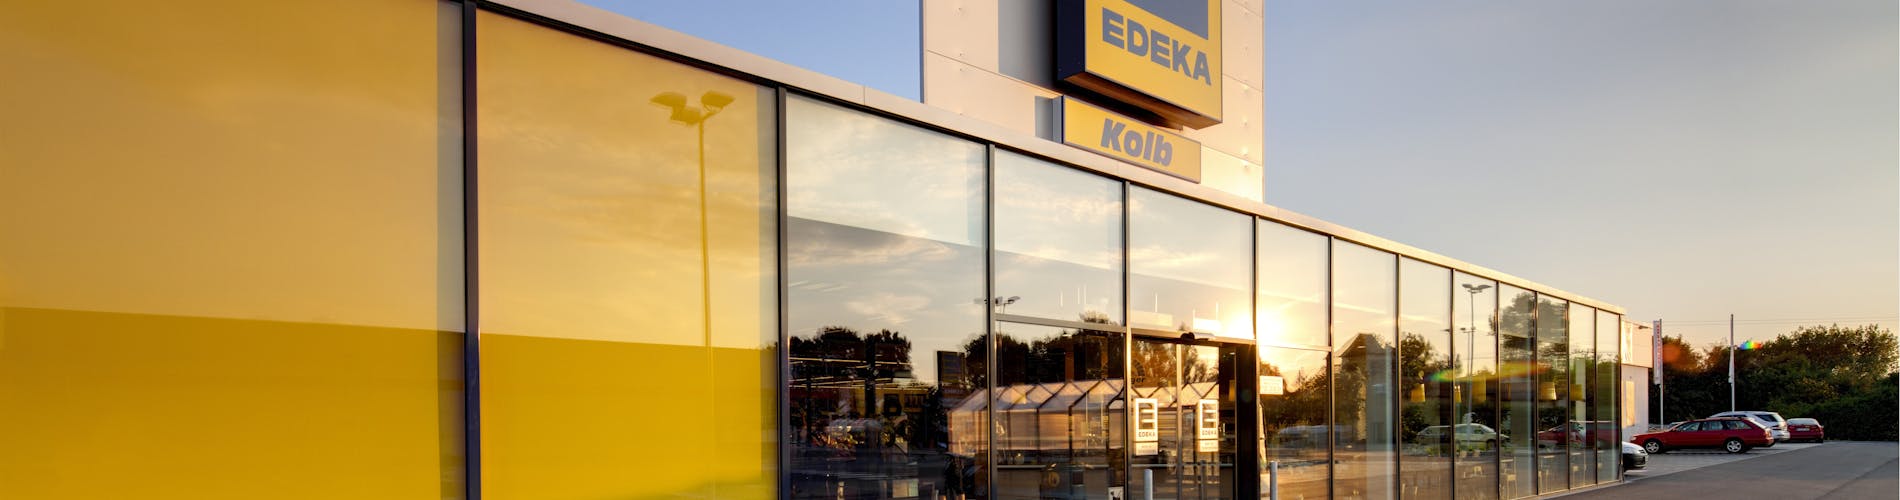 EDEKA Markt im Sonnenlicht App Flip